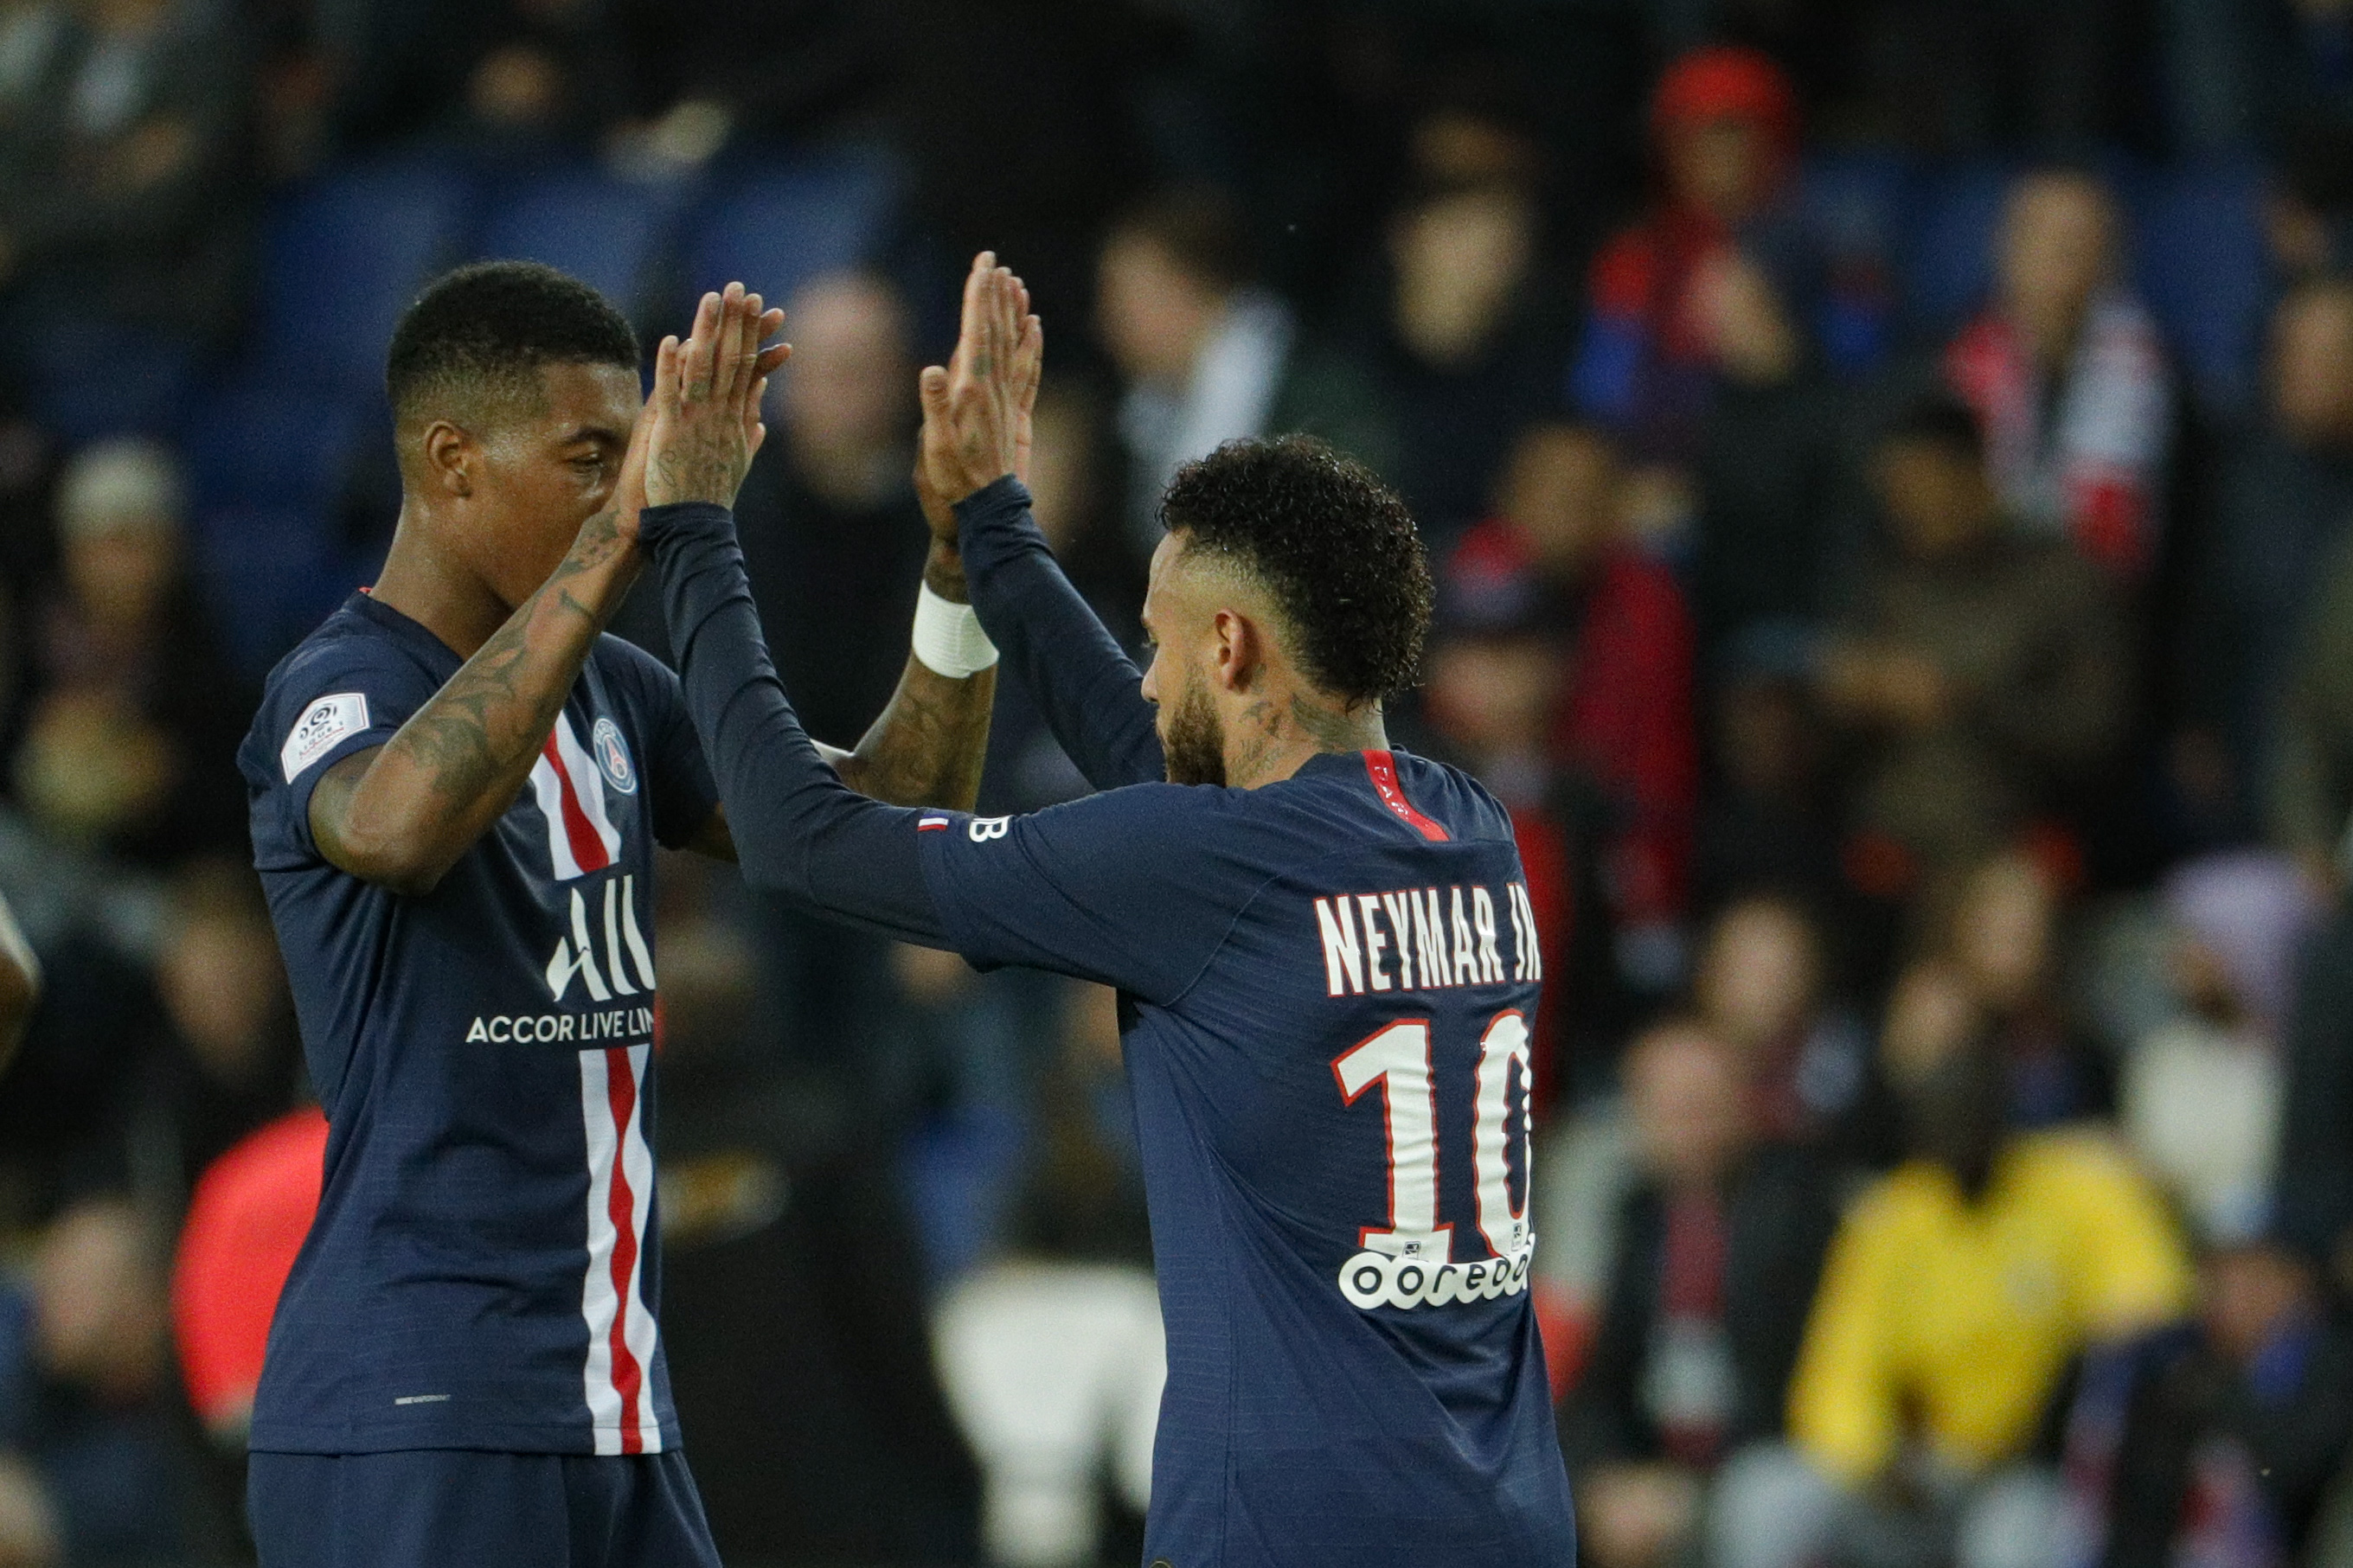 El PSG sacude al Angers con goles de Sarabia, Icardi y Neymar